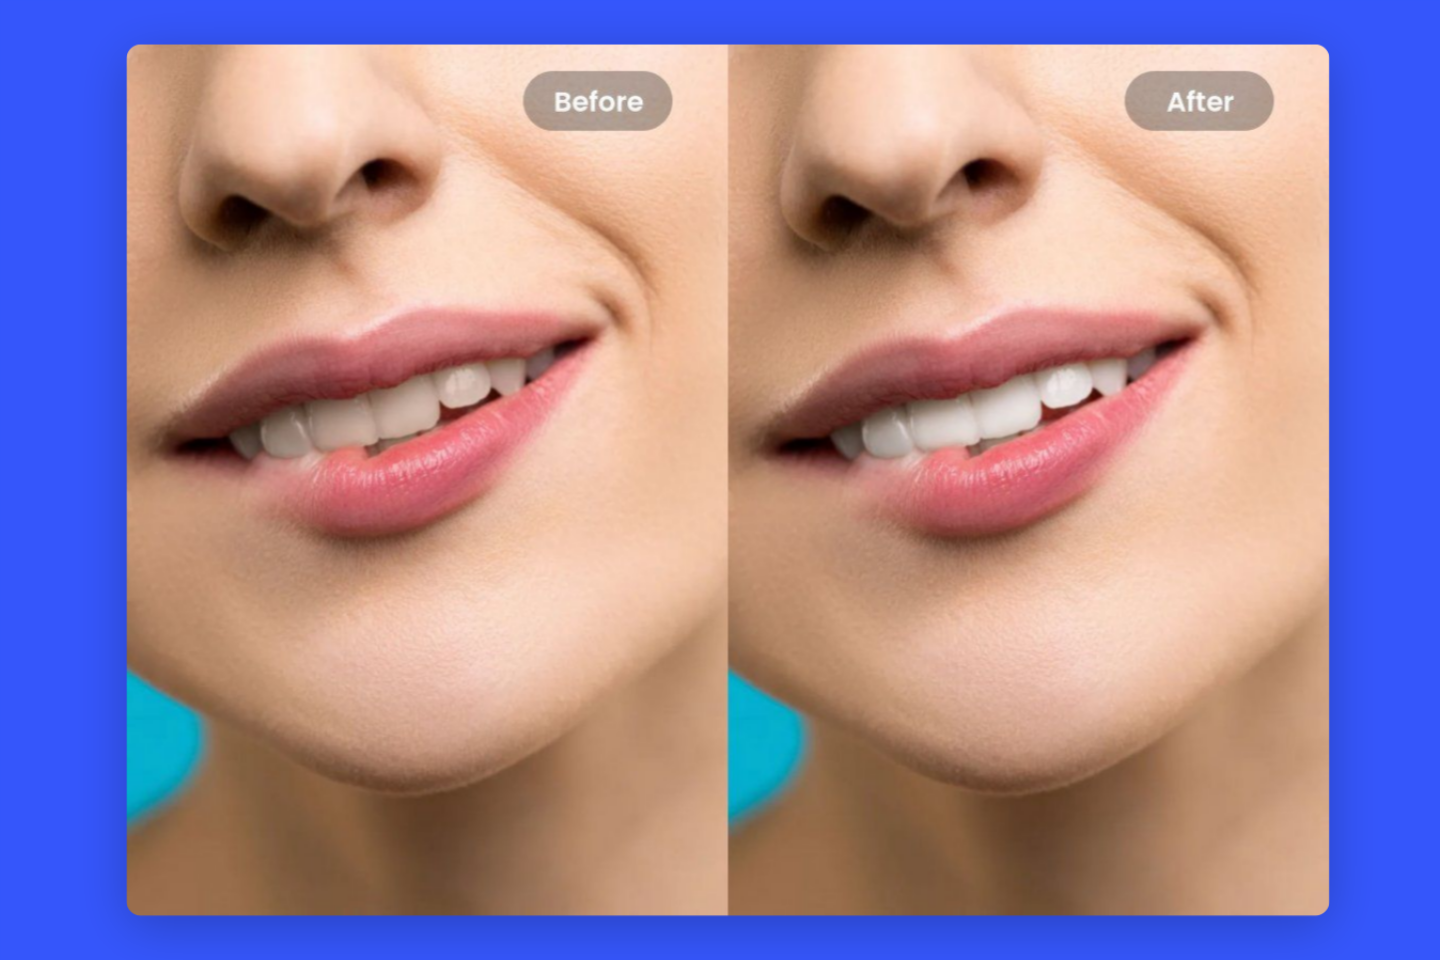 Una cara sonriente con sus dientes blanqueados en fotos antes y después